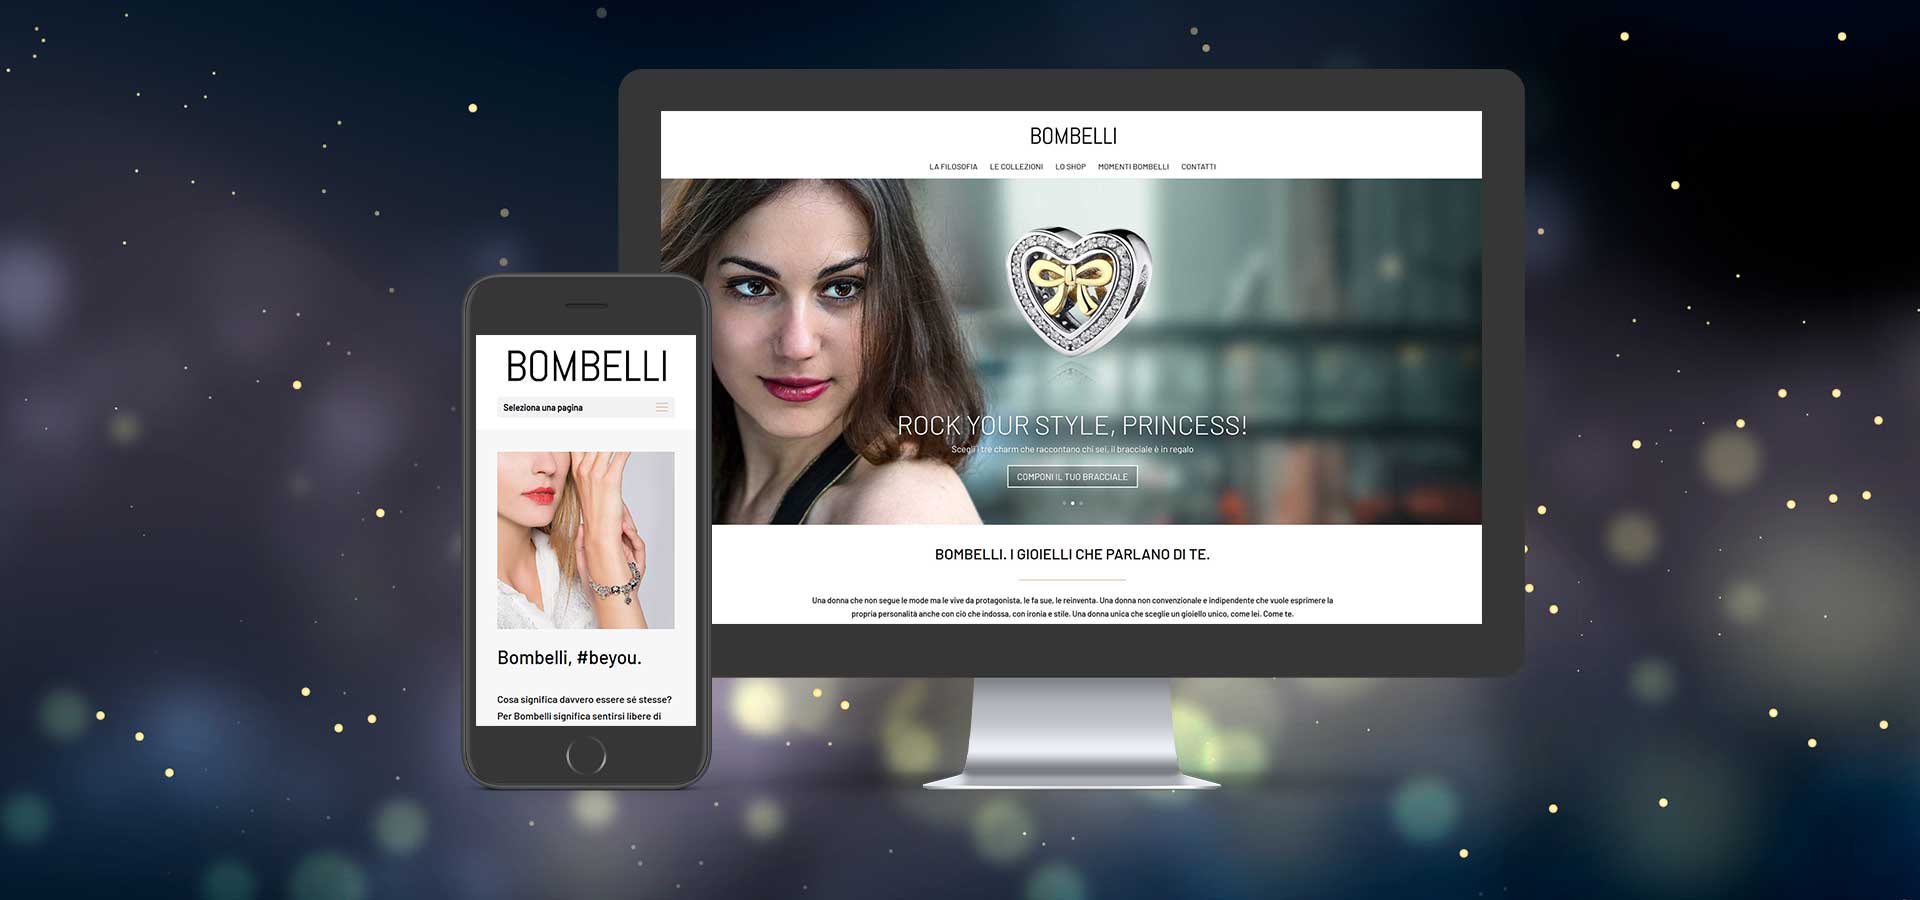 Realizzazione siti web mobile first ux design Bombelli Gioielli Unique